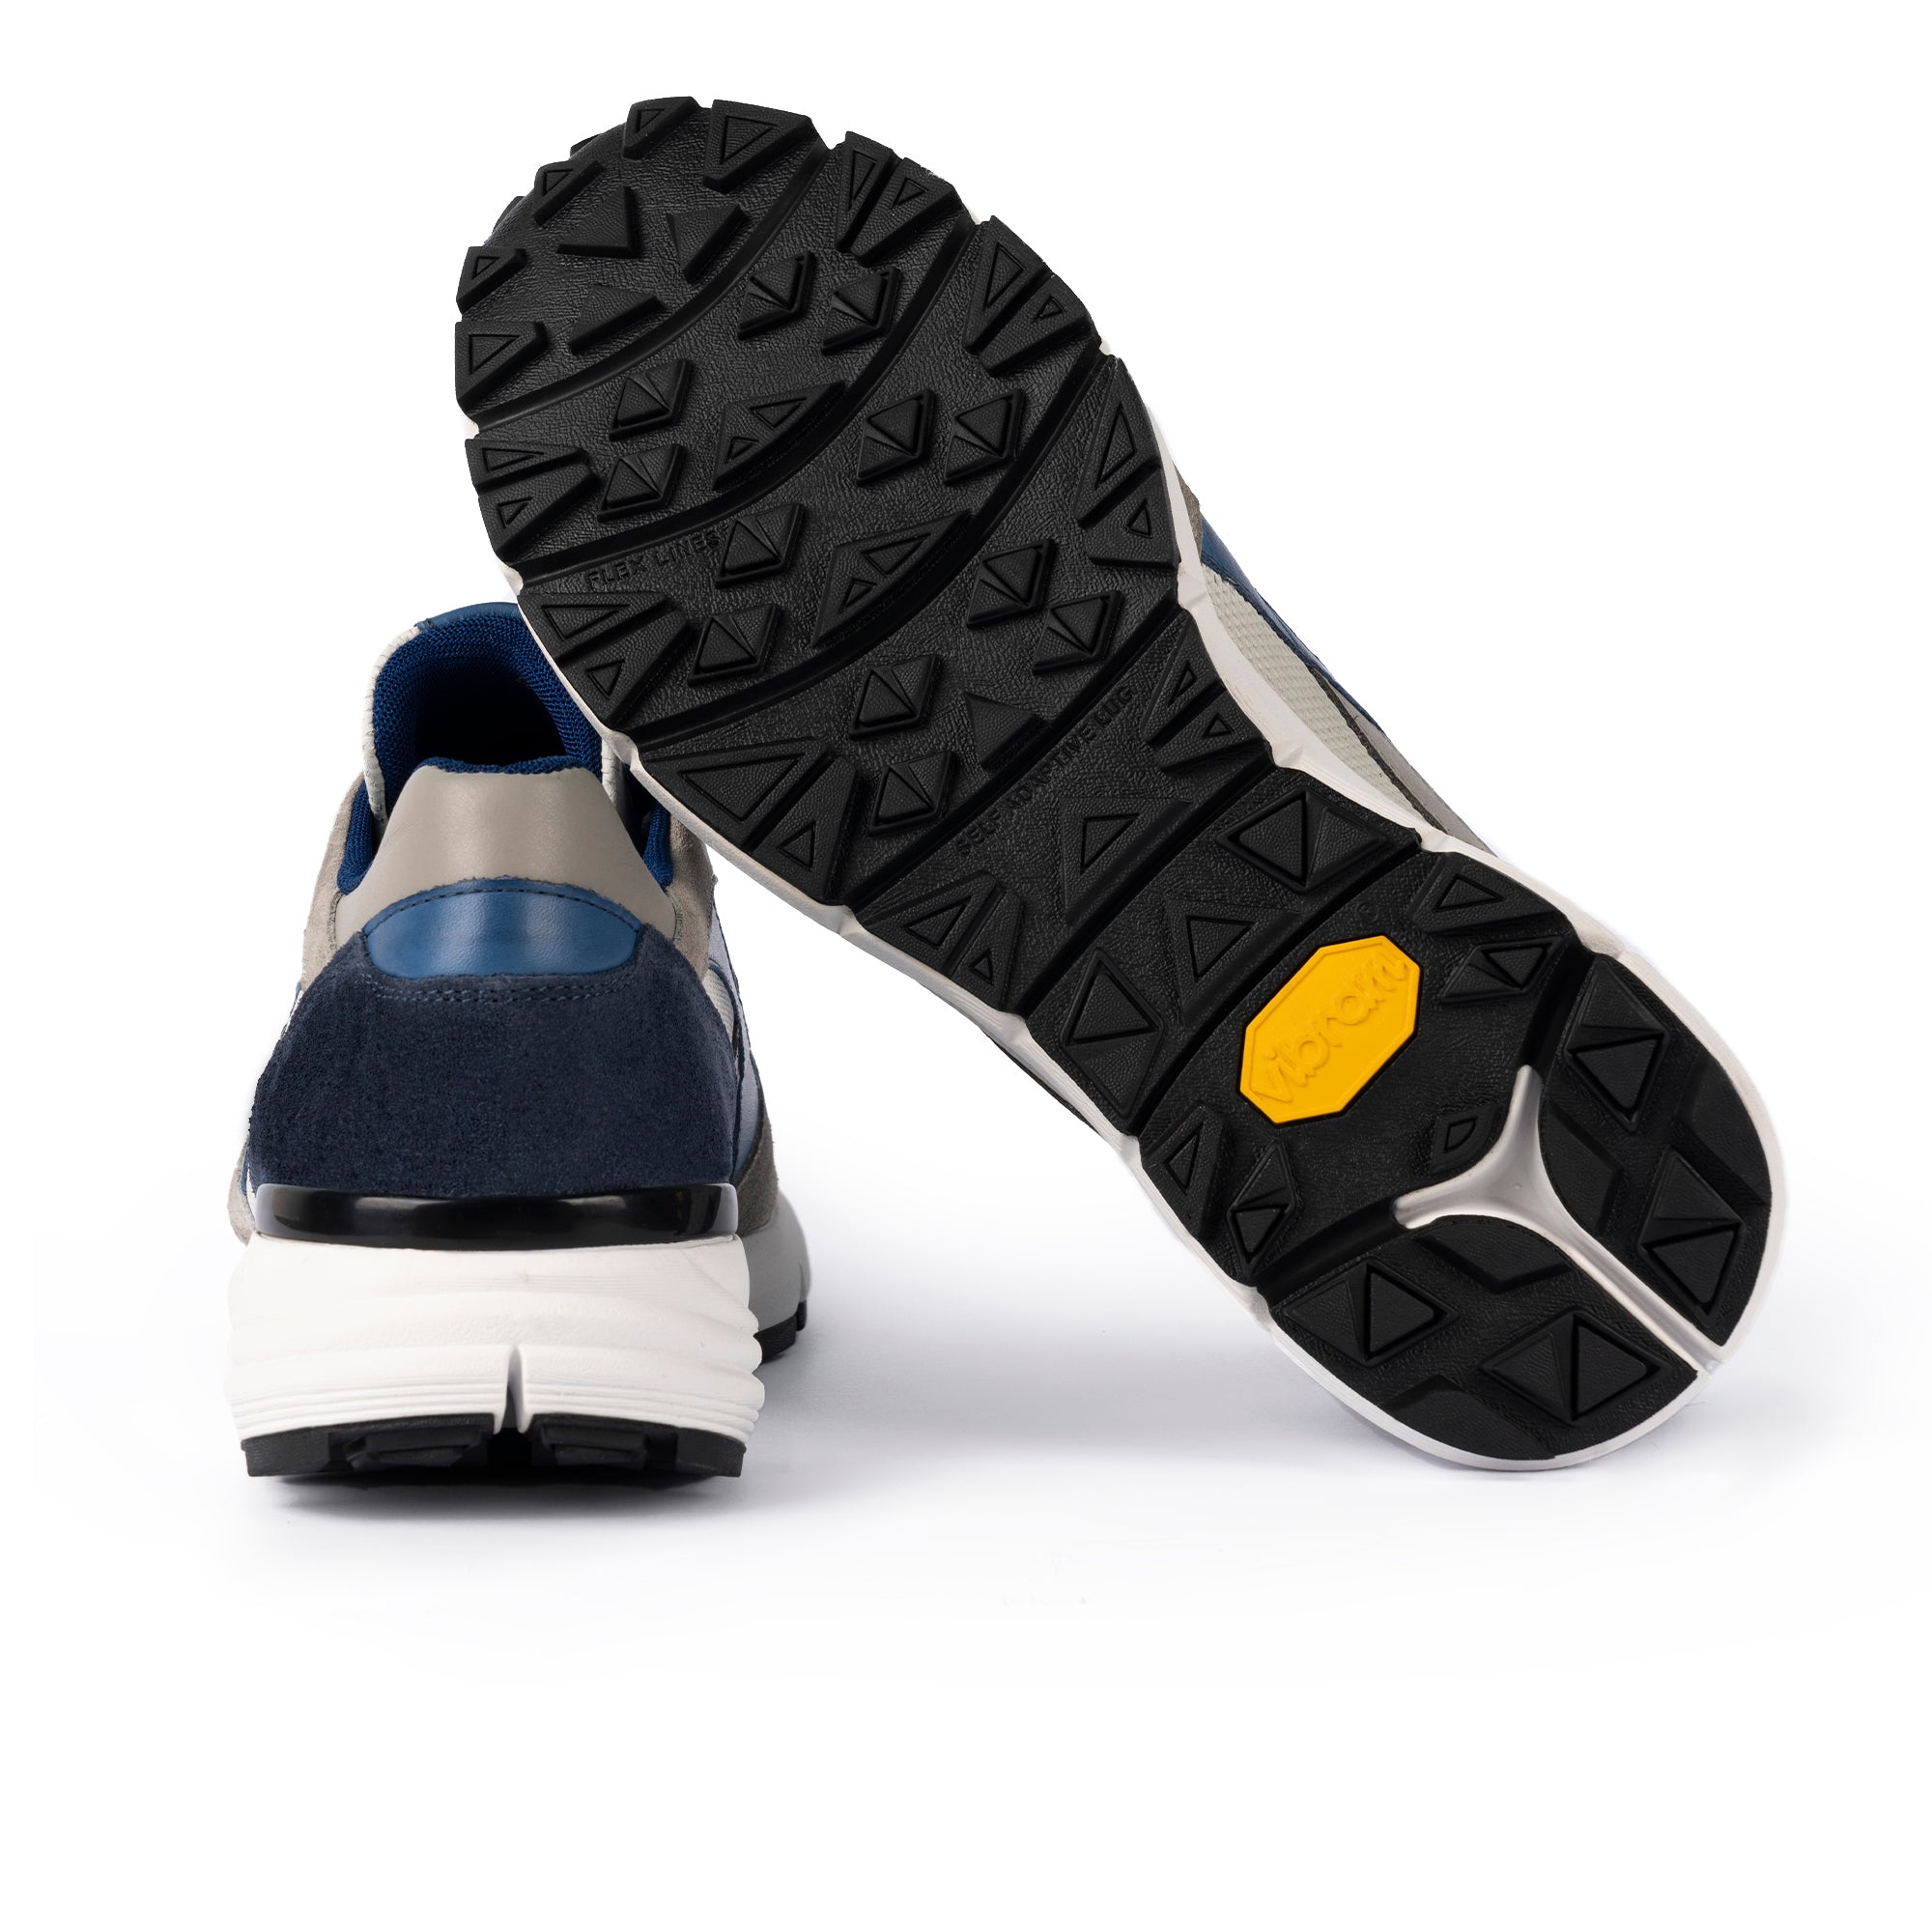 Scarpa Sneakers Pelle/Camoscio Uomo Grigio/Bianco/Blu